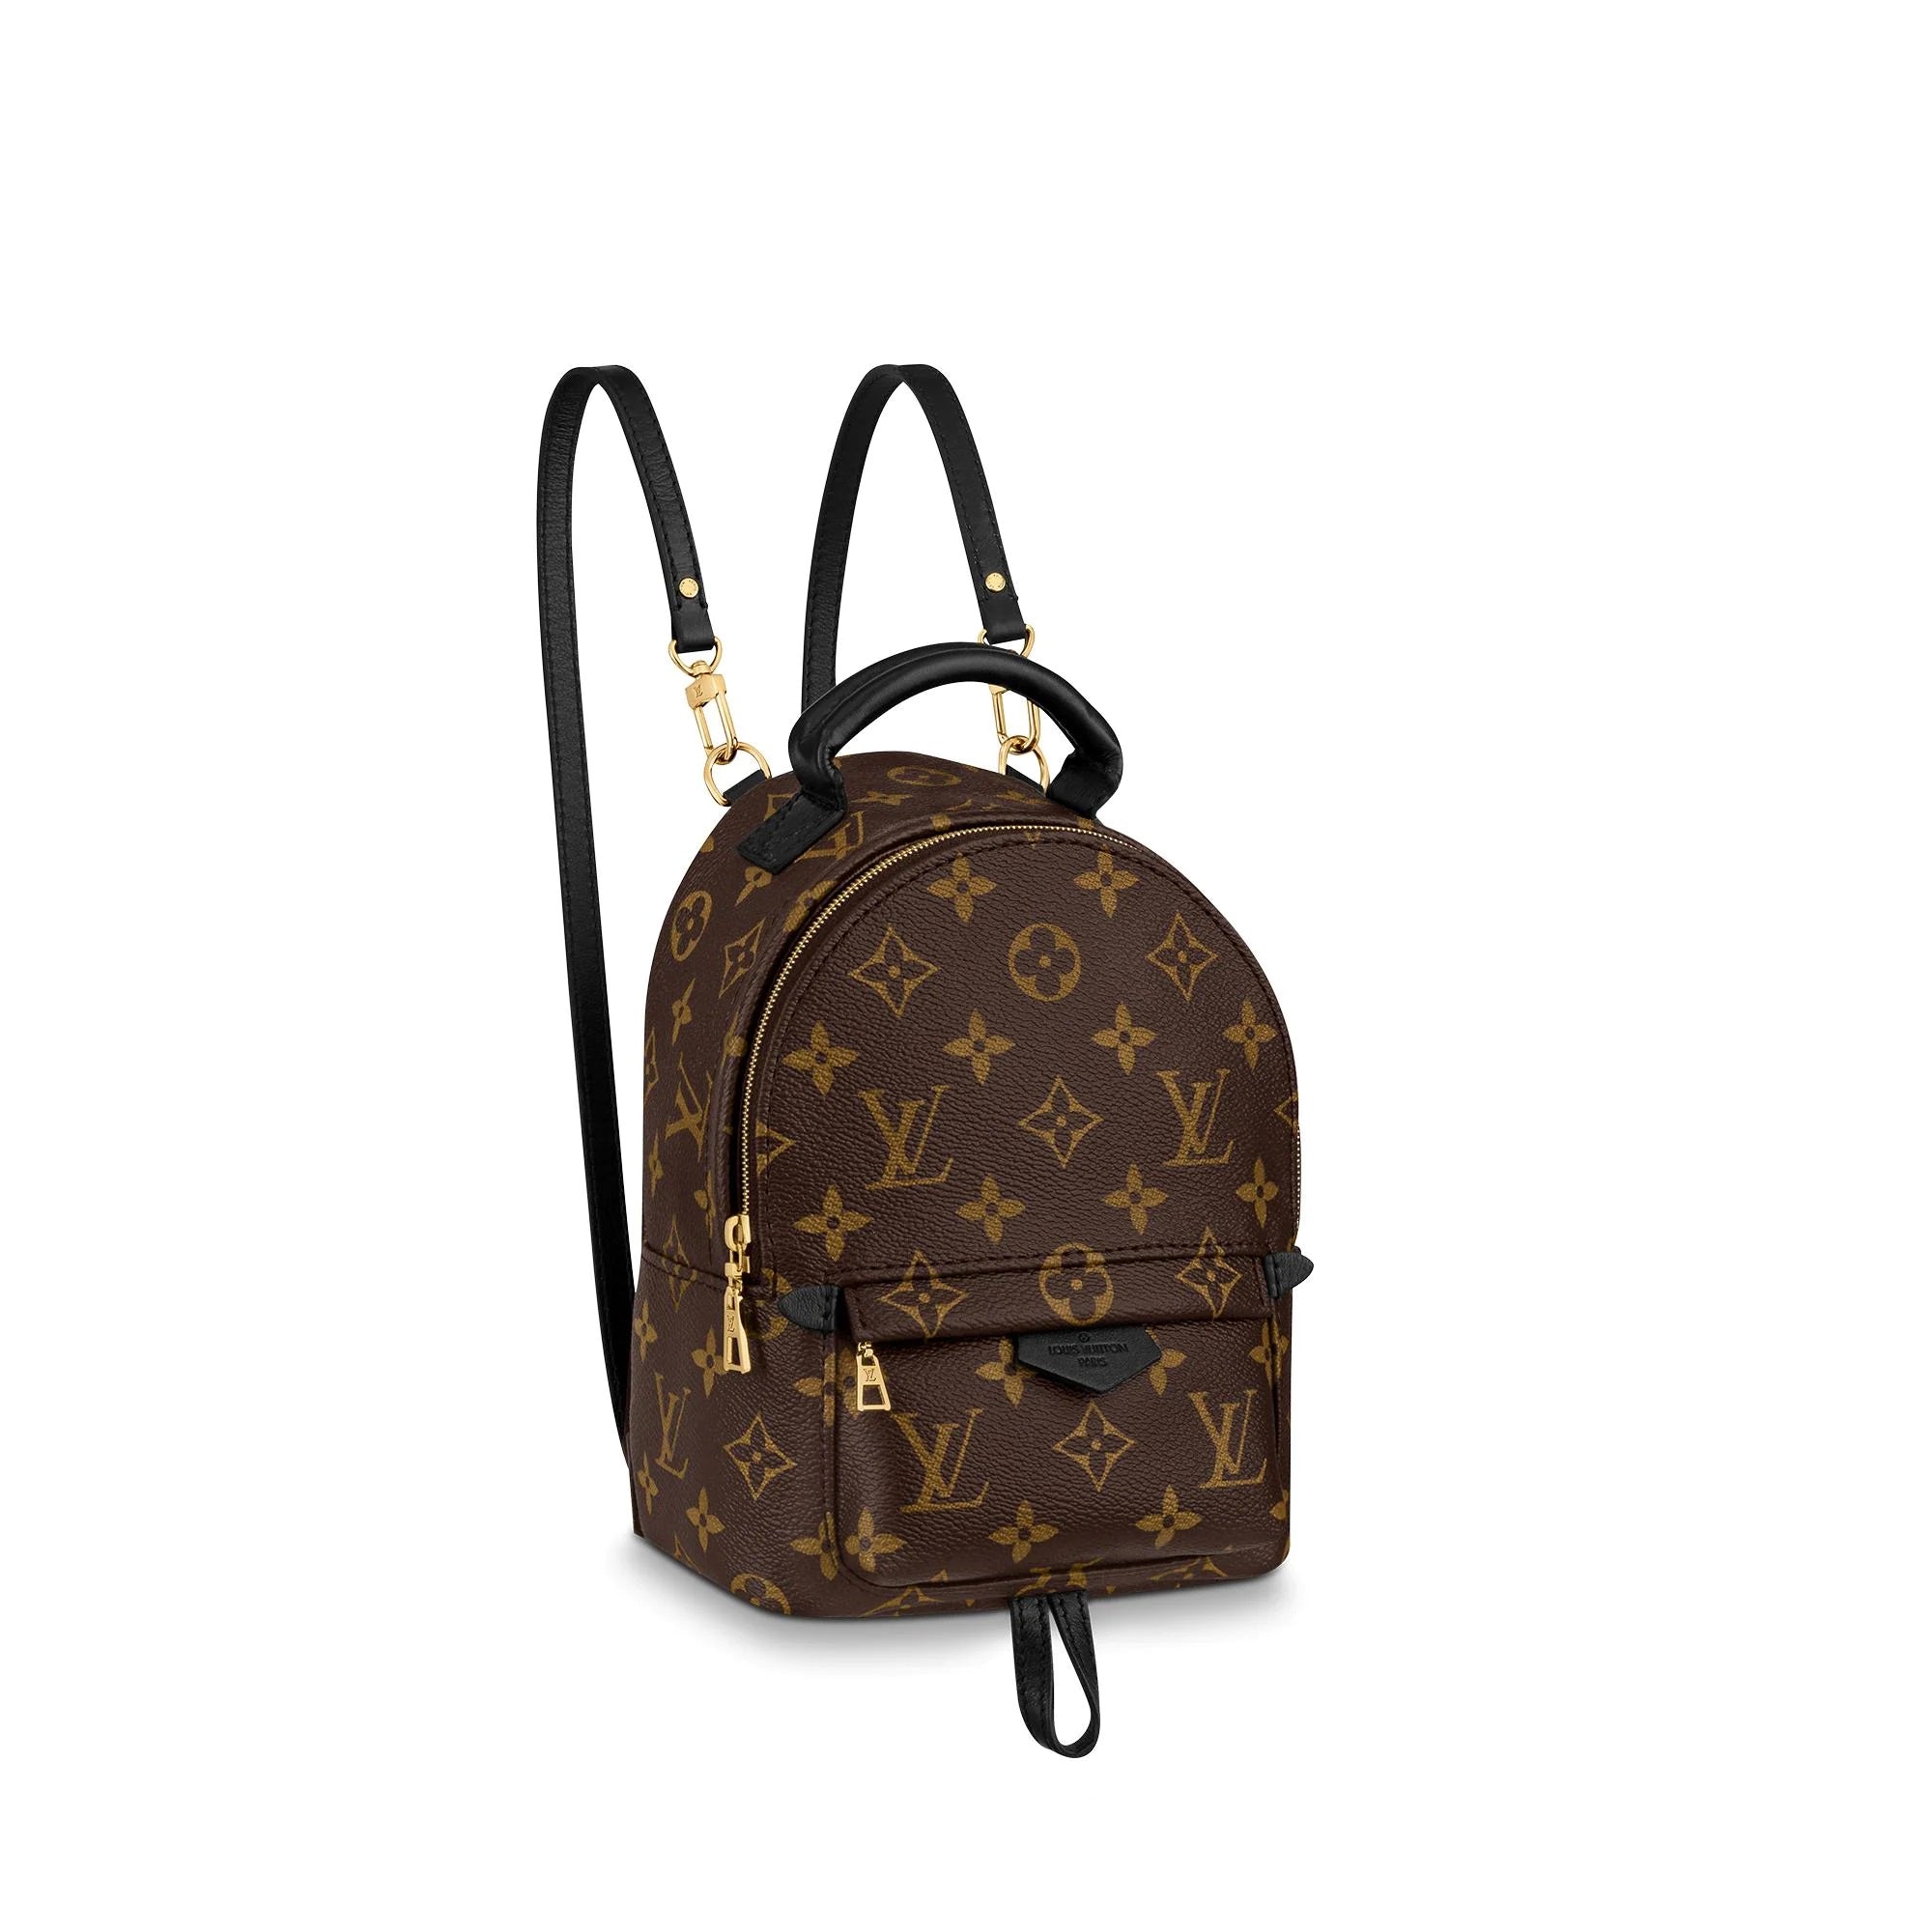 Cómo se limpia de forma segura un bolso Louis Vuitton en casa? – Bagaholic